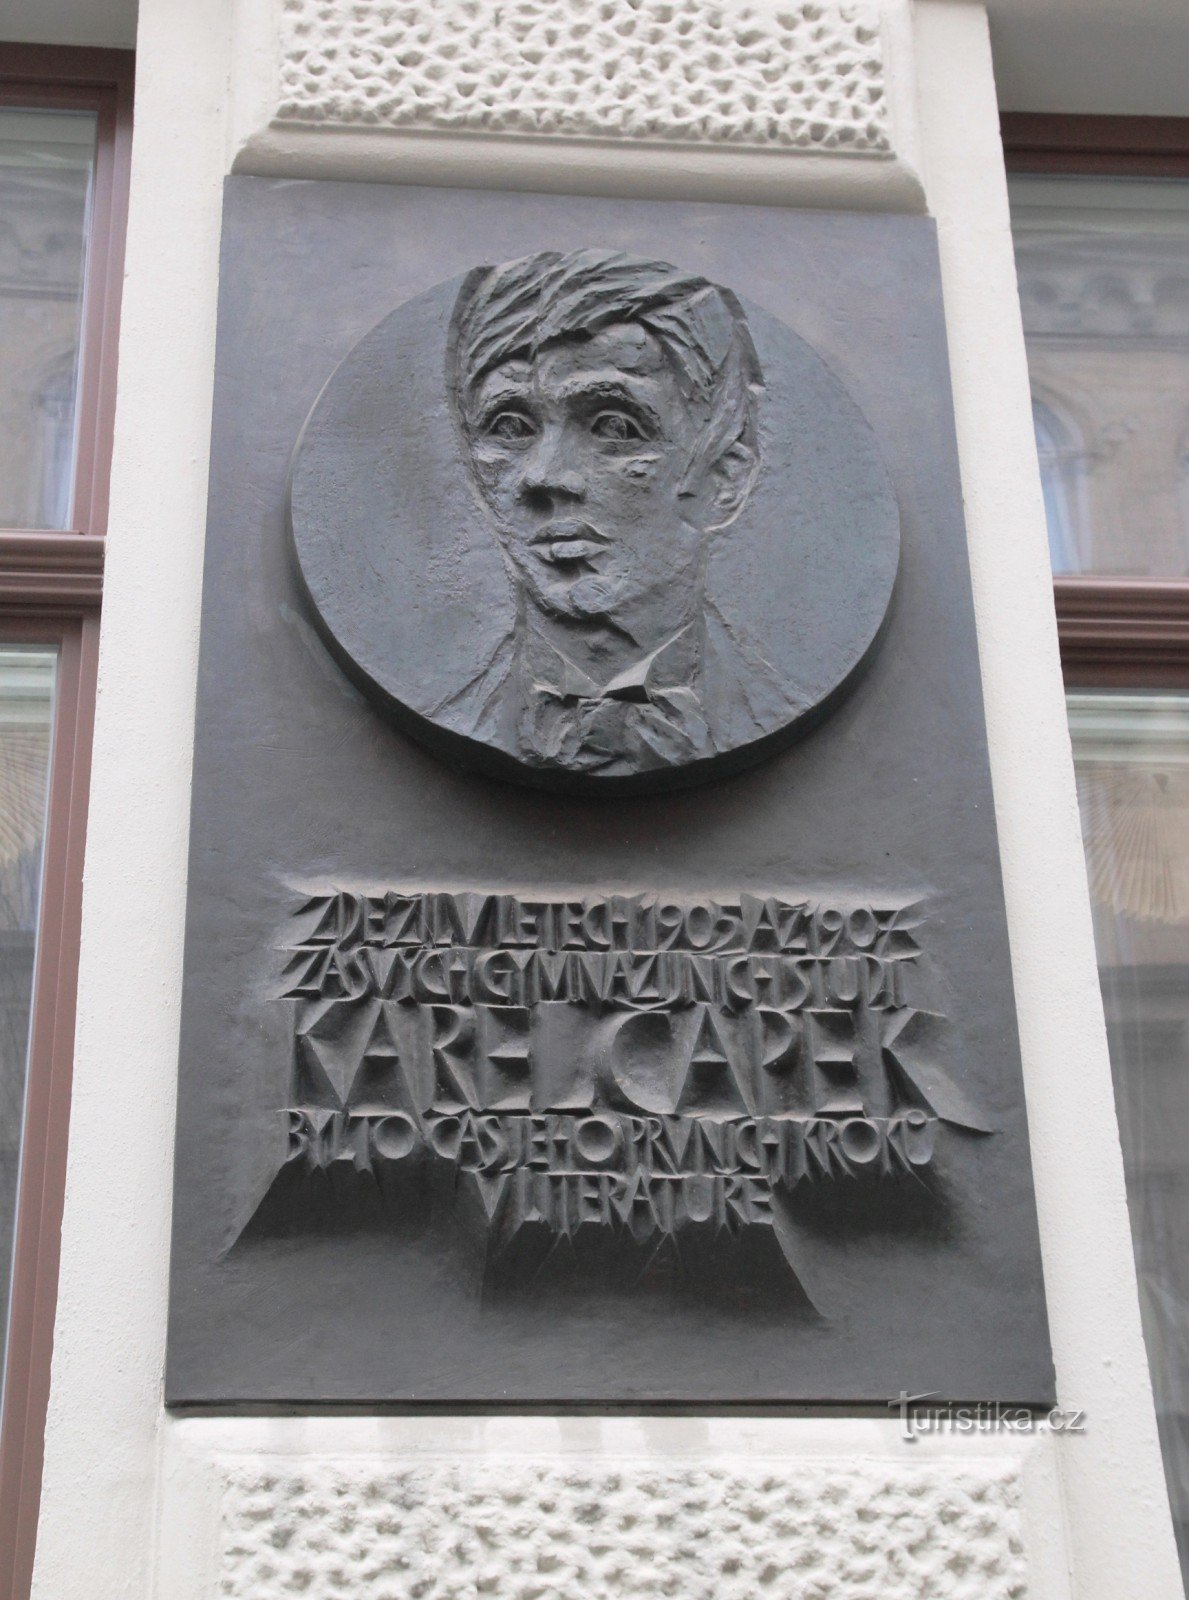 Tấm bảng tưởng niệm Karel Čapek